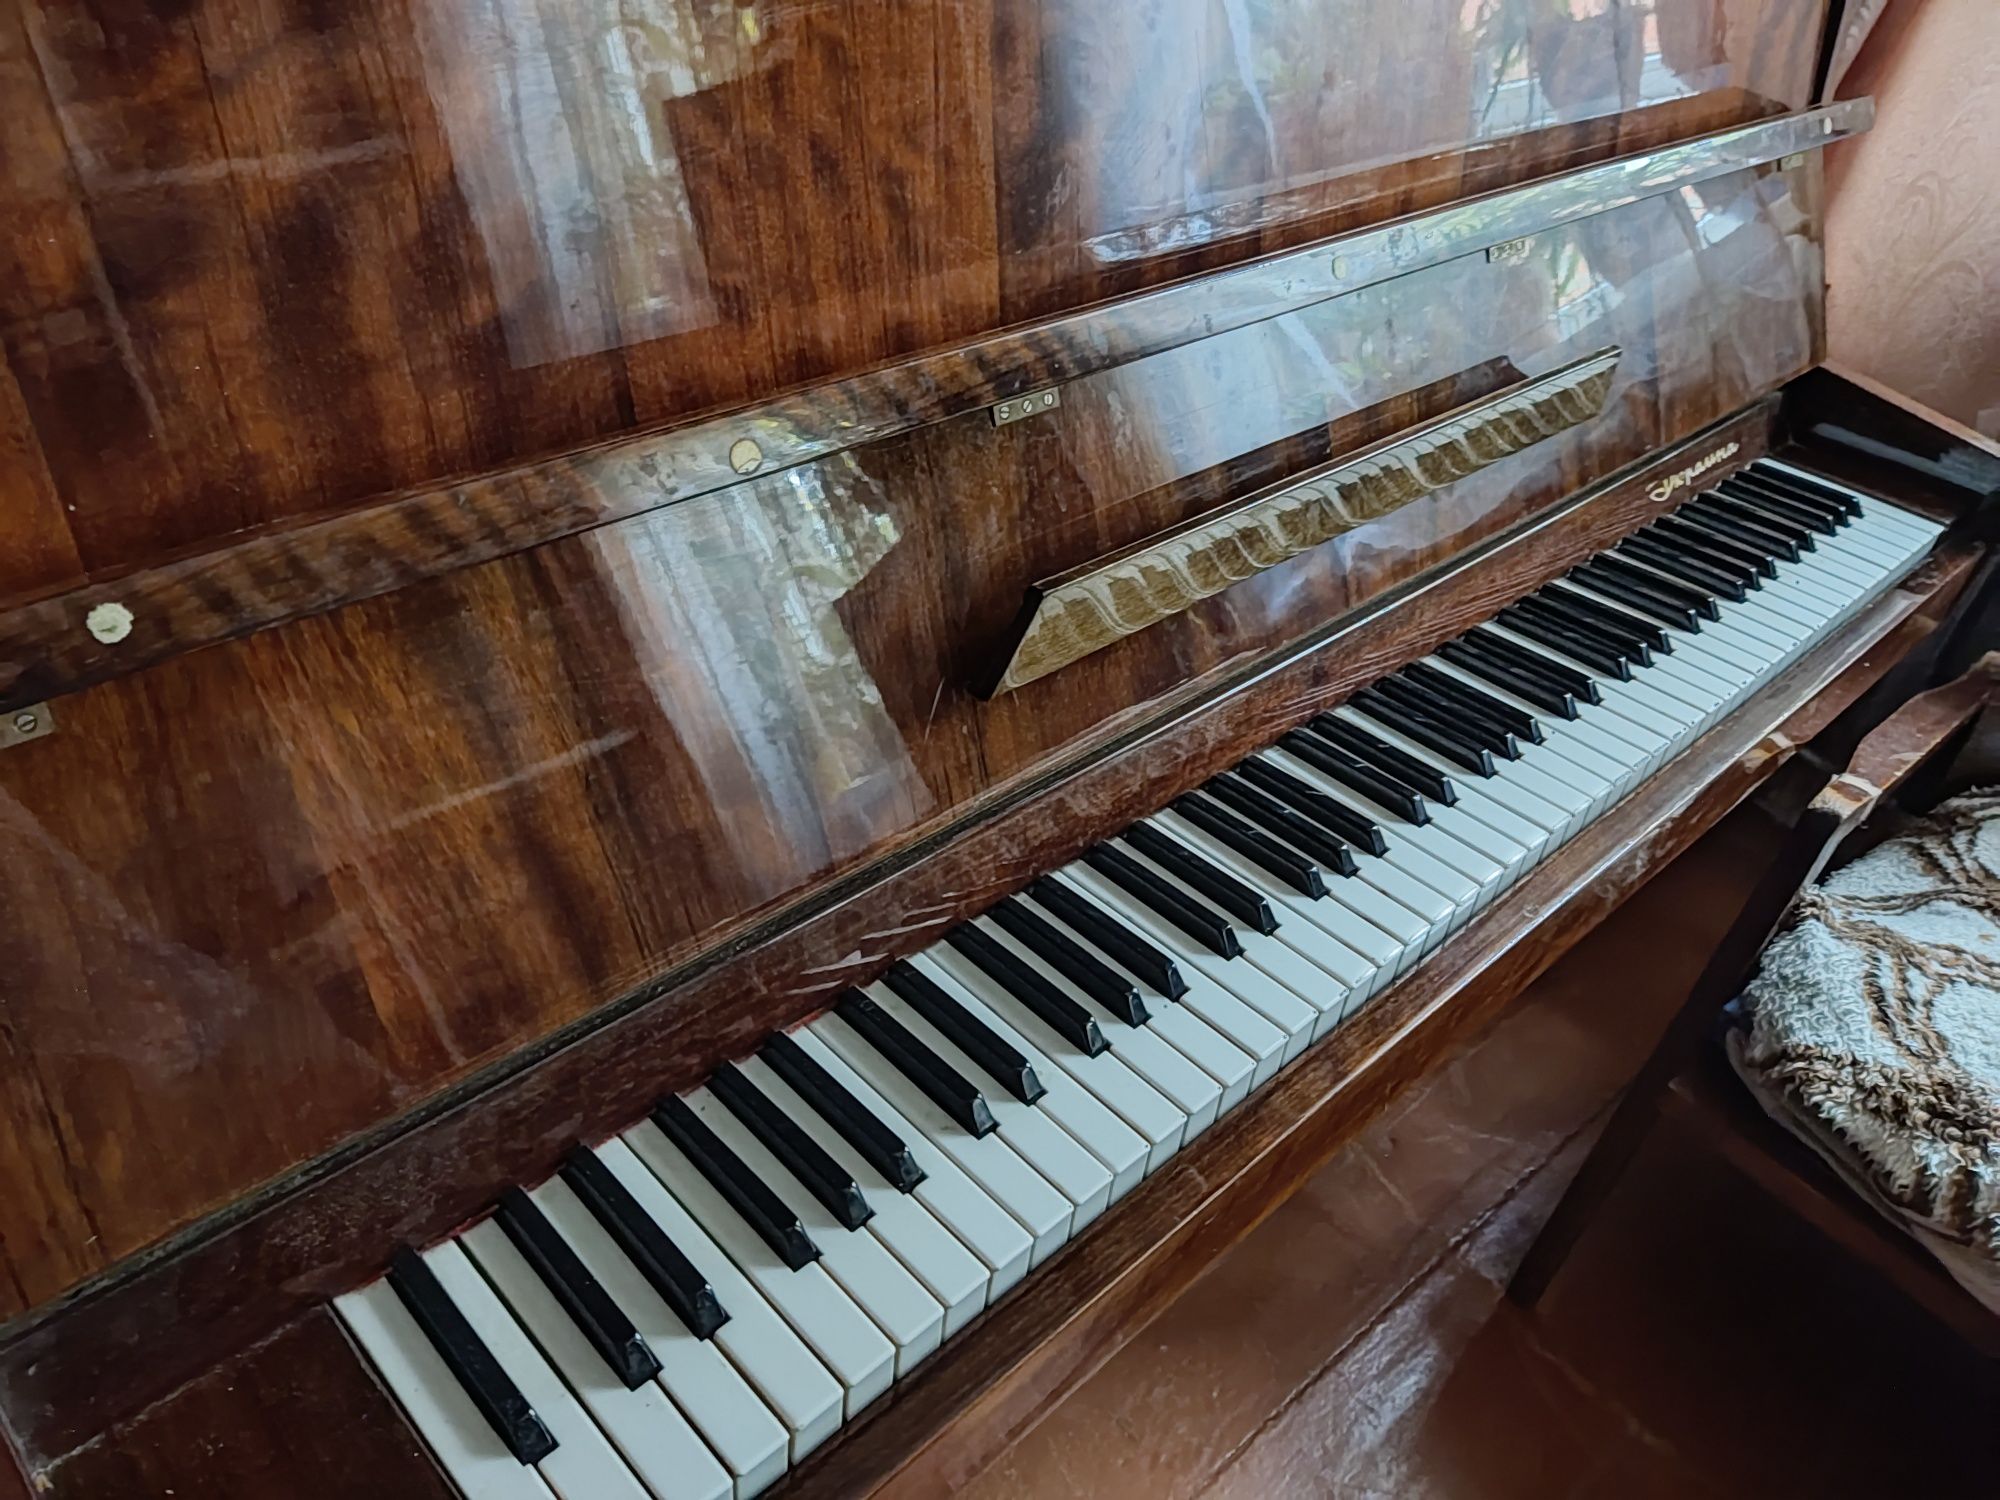 Пианино "Украина"